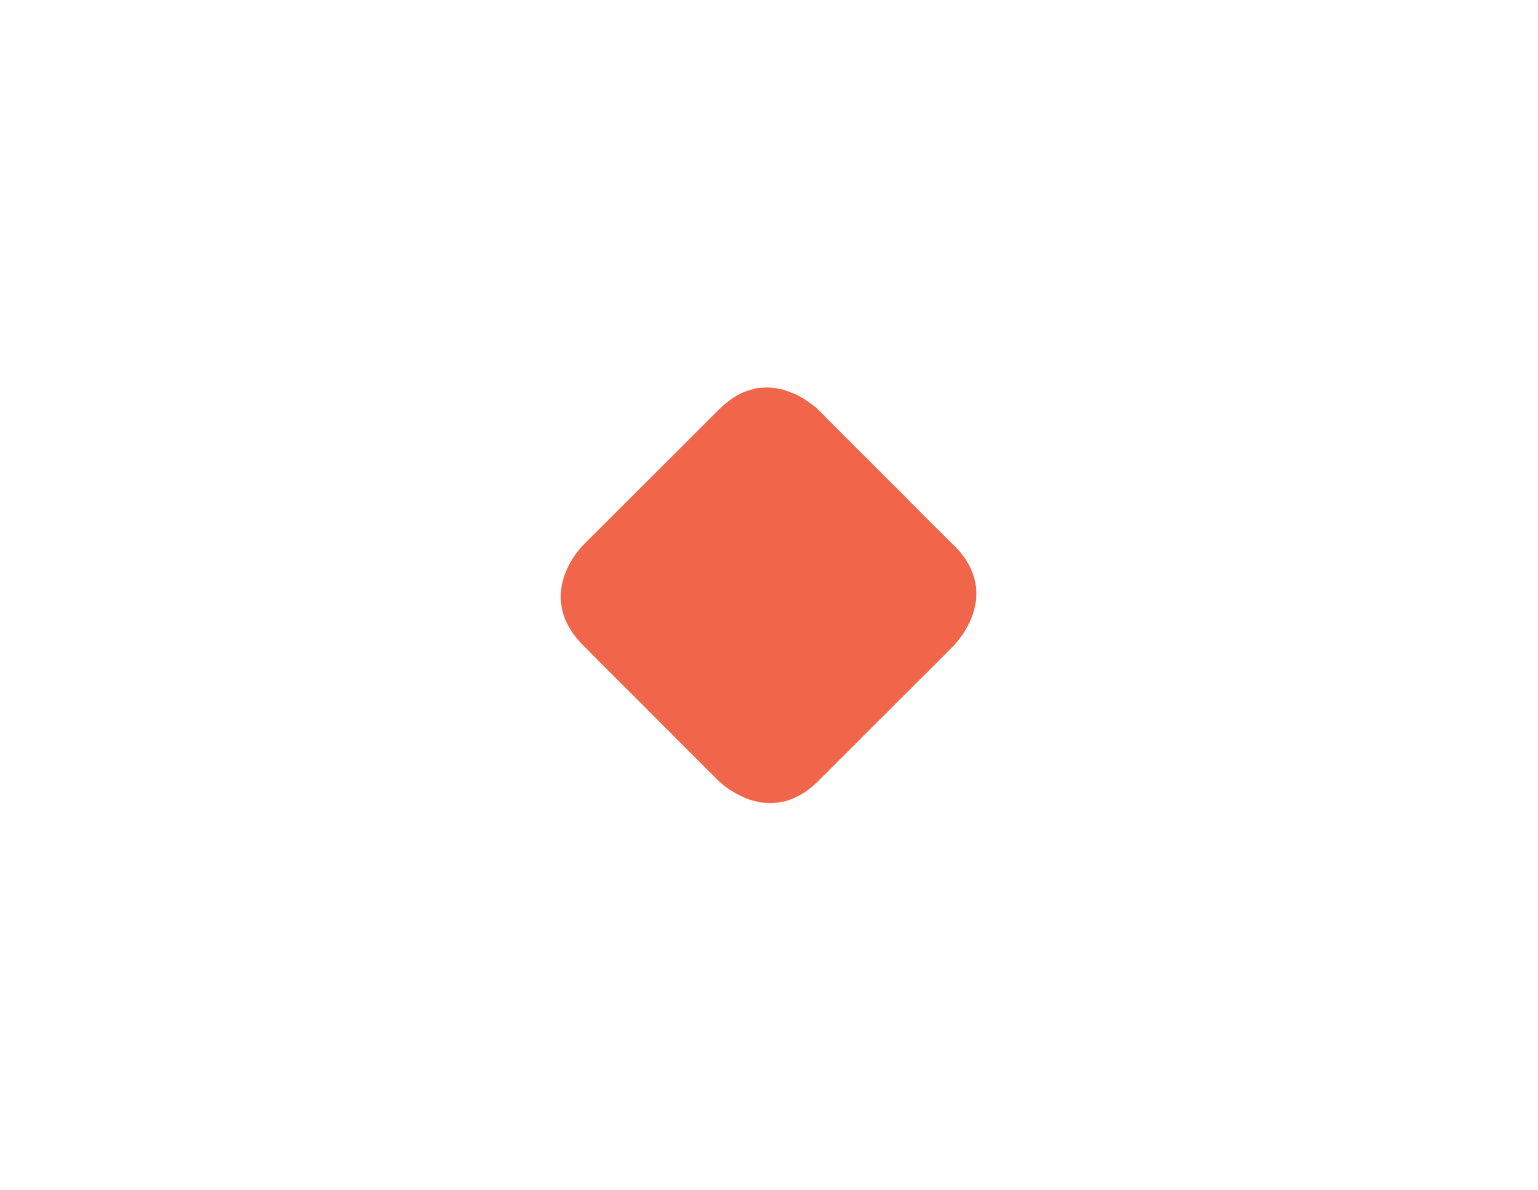 Cimpress logo for dark backgrounds (transparent PNG)